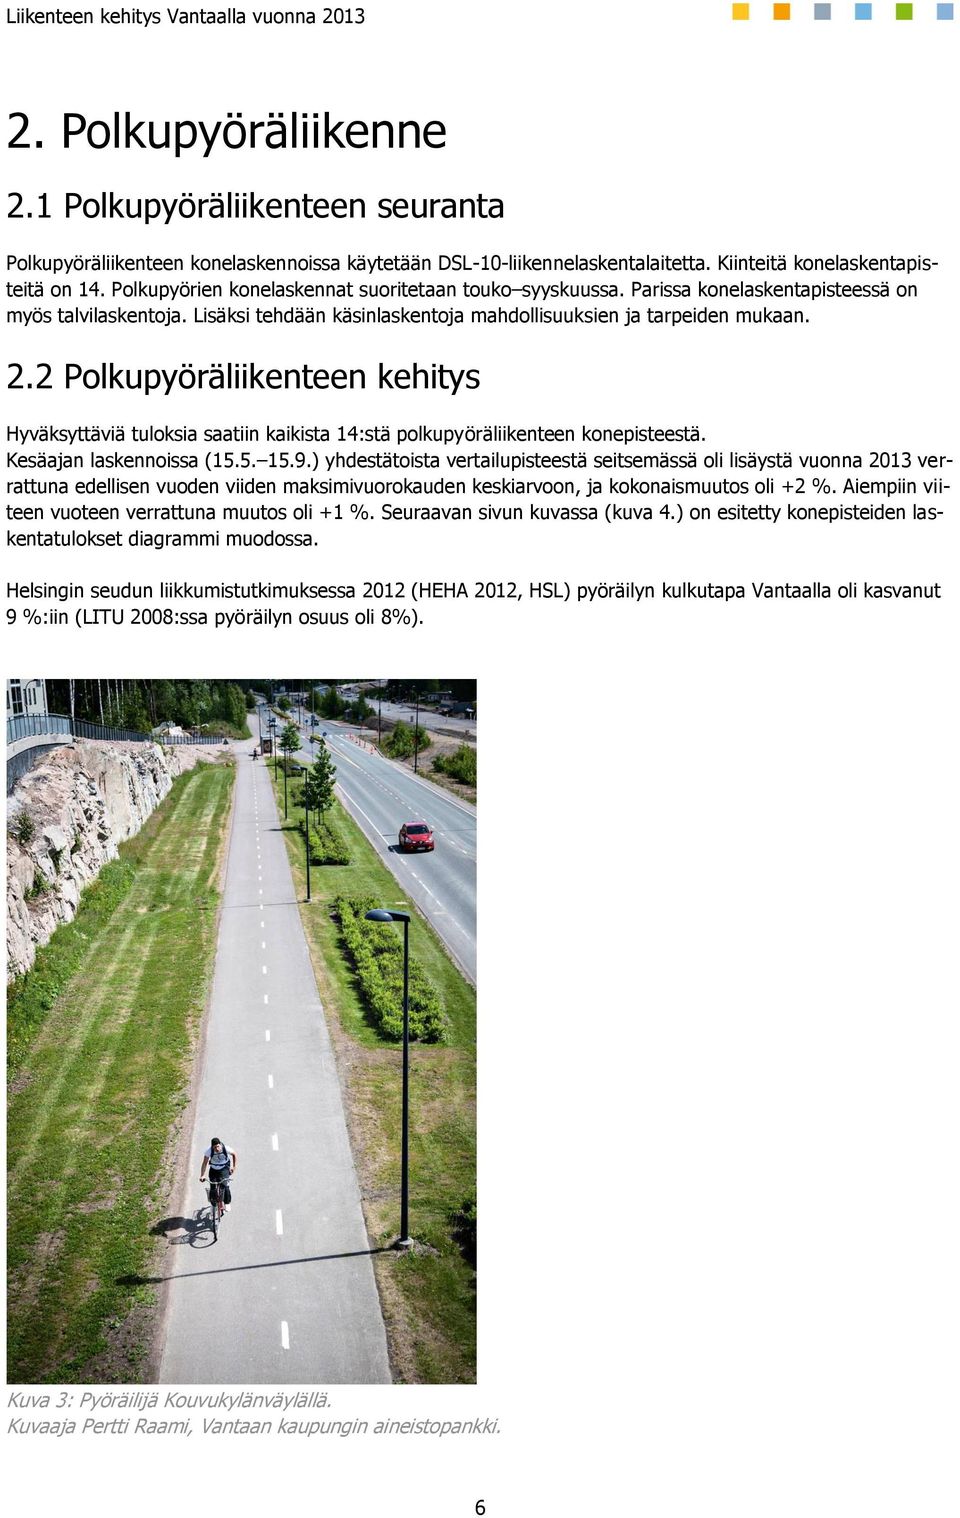 2 Polkupyöräliikenteen kehitys Hyväksyttäviä tuloksia saatiin kaikista 14:stä polkupyöräliikenteen konepisteestä. Kesäajan laskennoissa (15.5. 15.9.